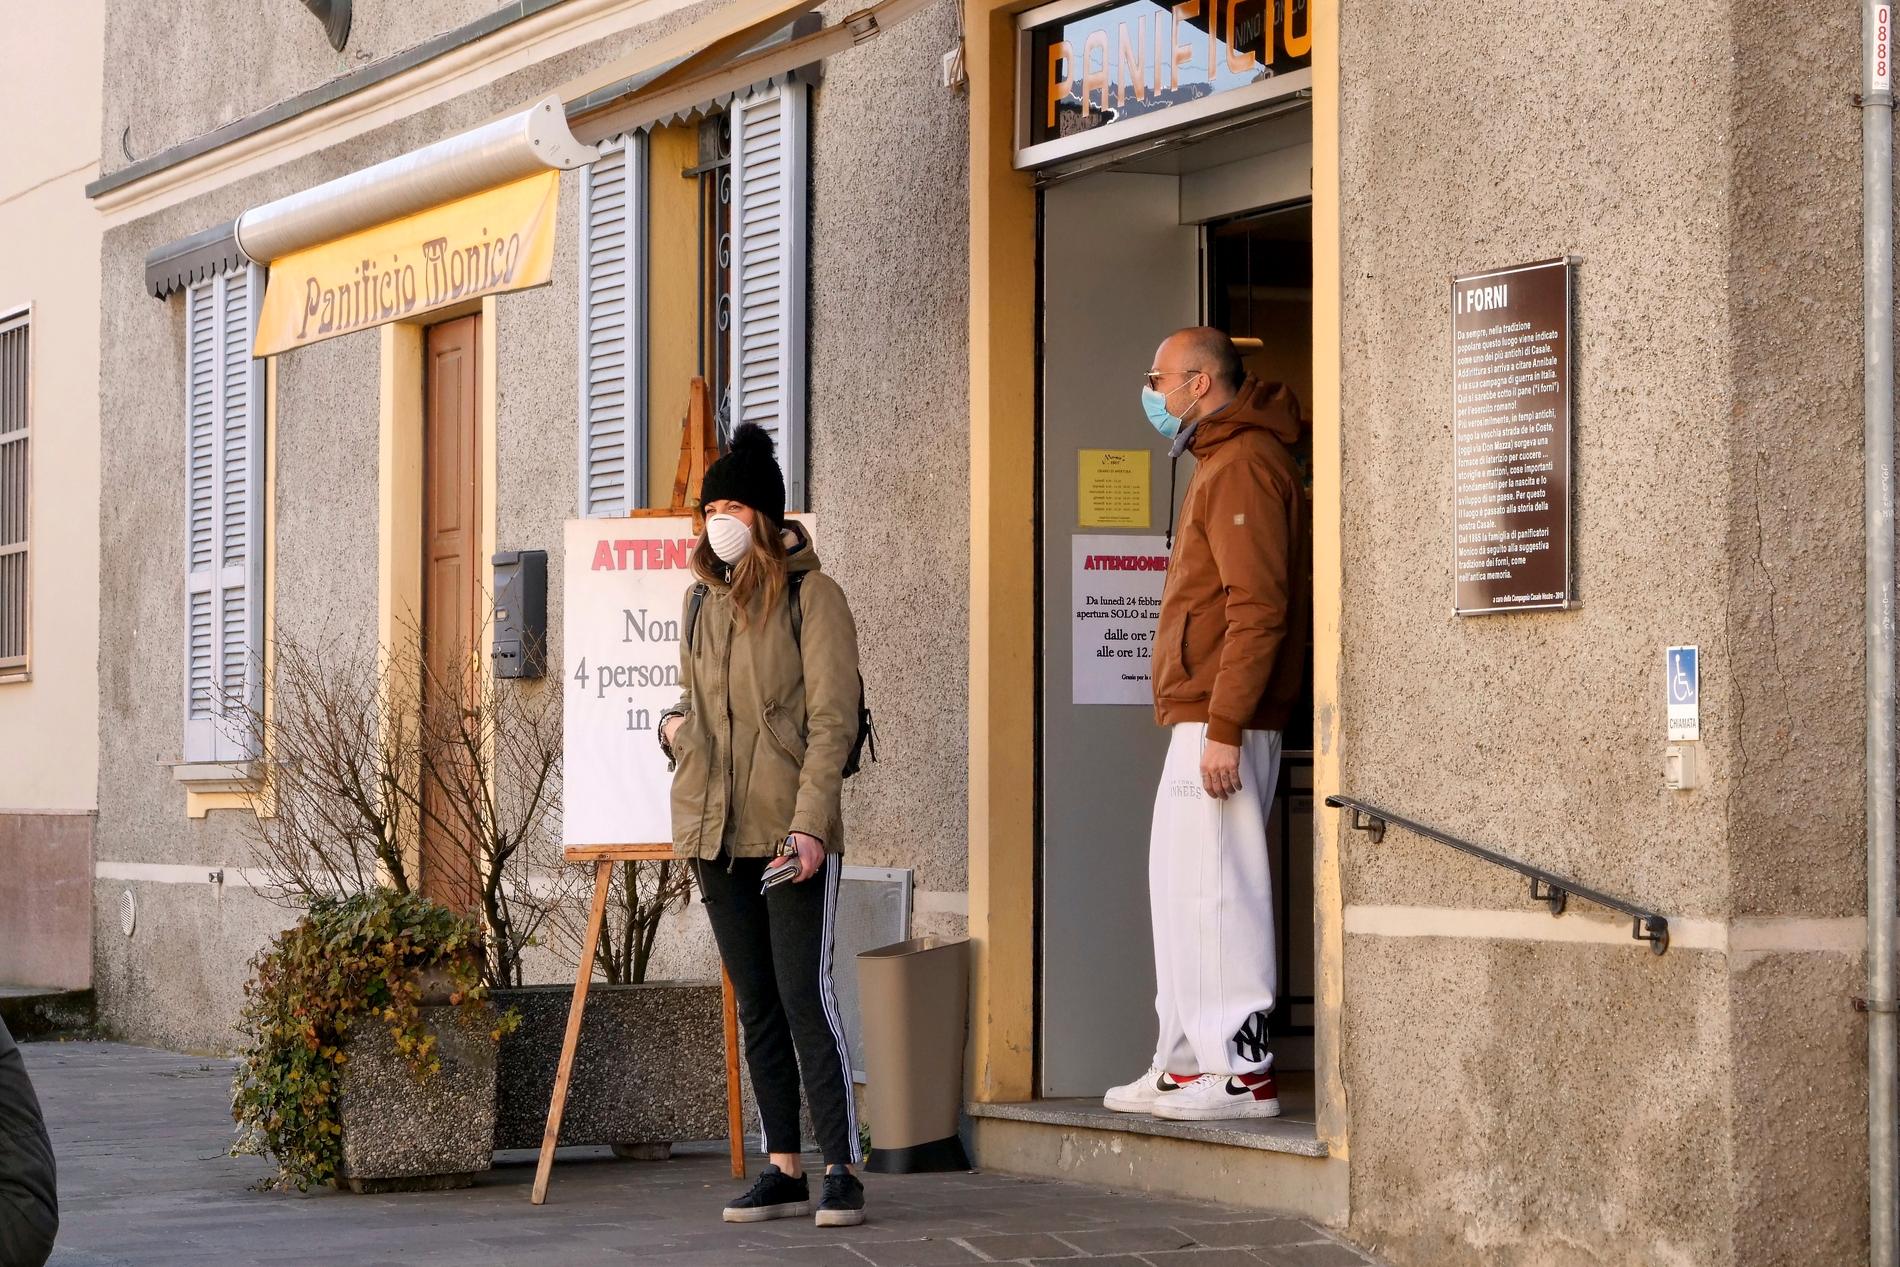 "Endast fyra personer samtidigt i affären", manas på en skylt utanför ett bageri i Casalpusterlengo i norra Italien. Staden är en av dem som stängts av för att förhindra ytterligare spridning av coronaviruset.